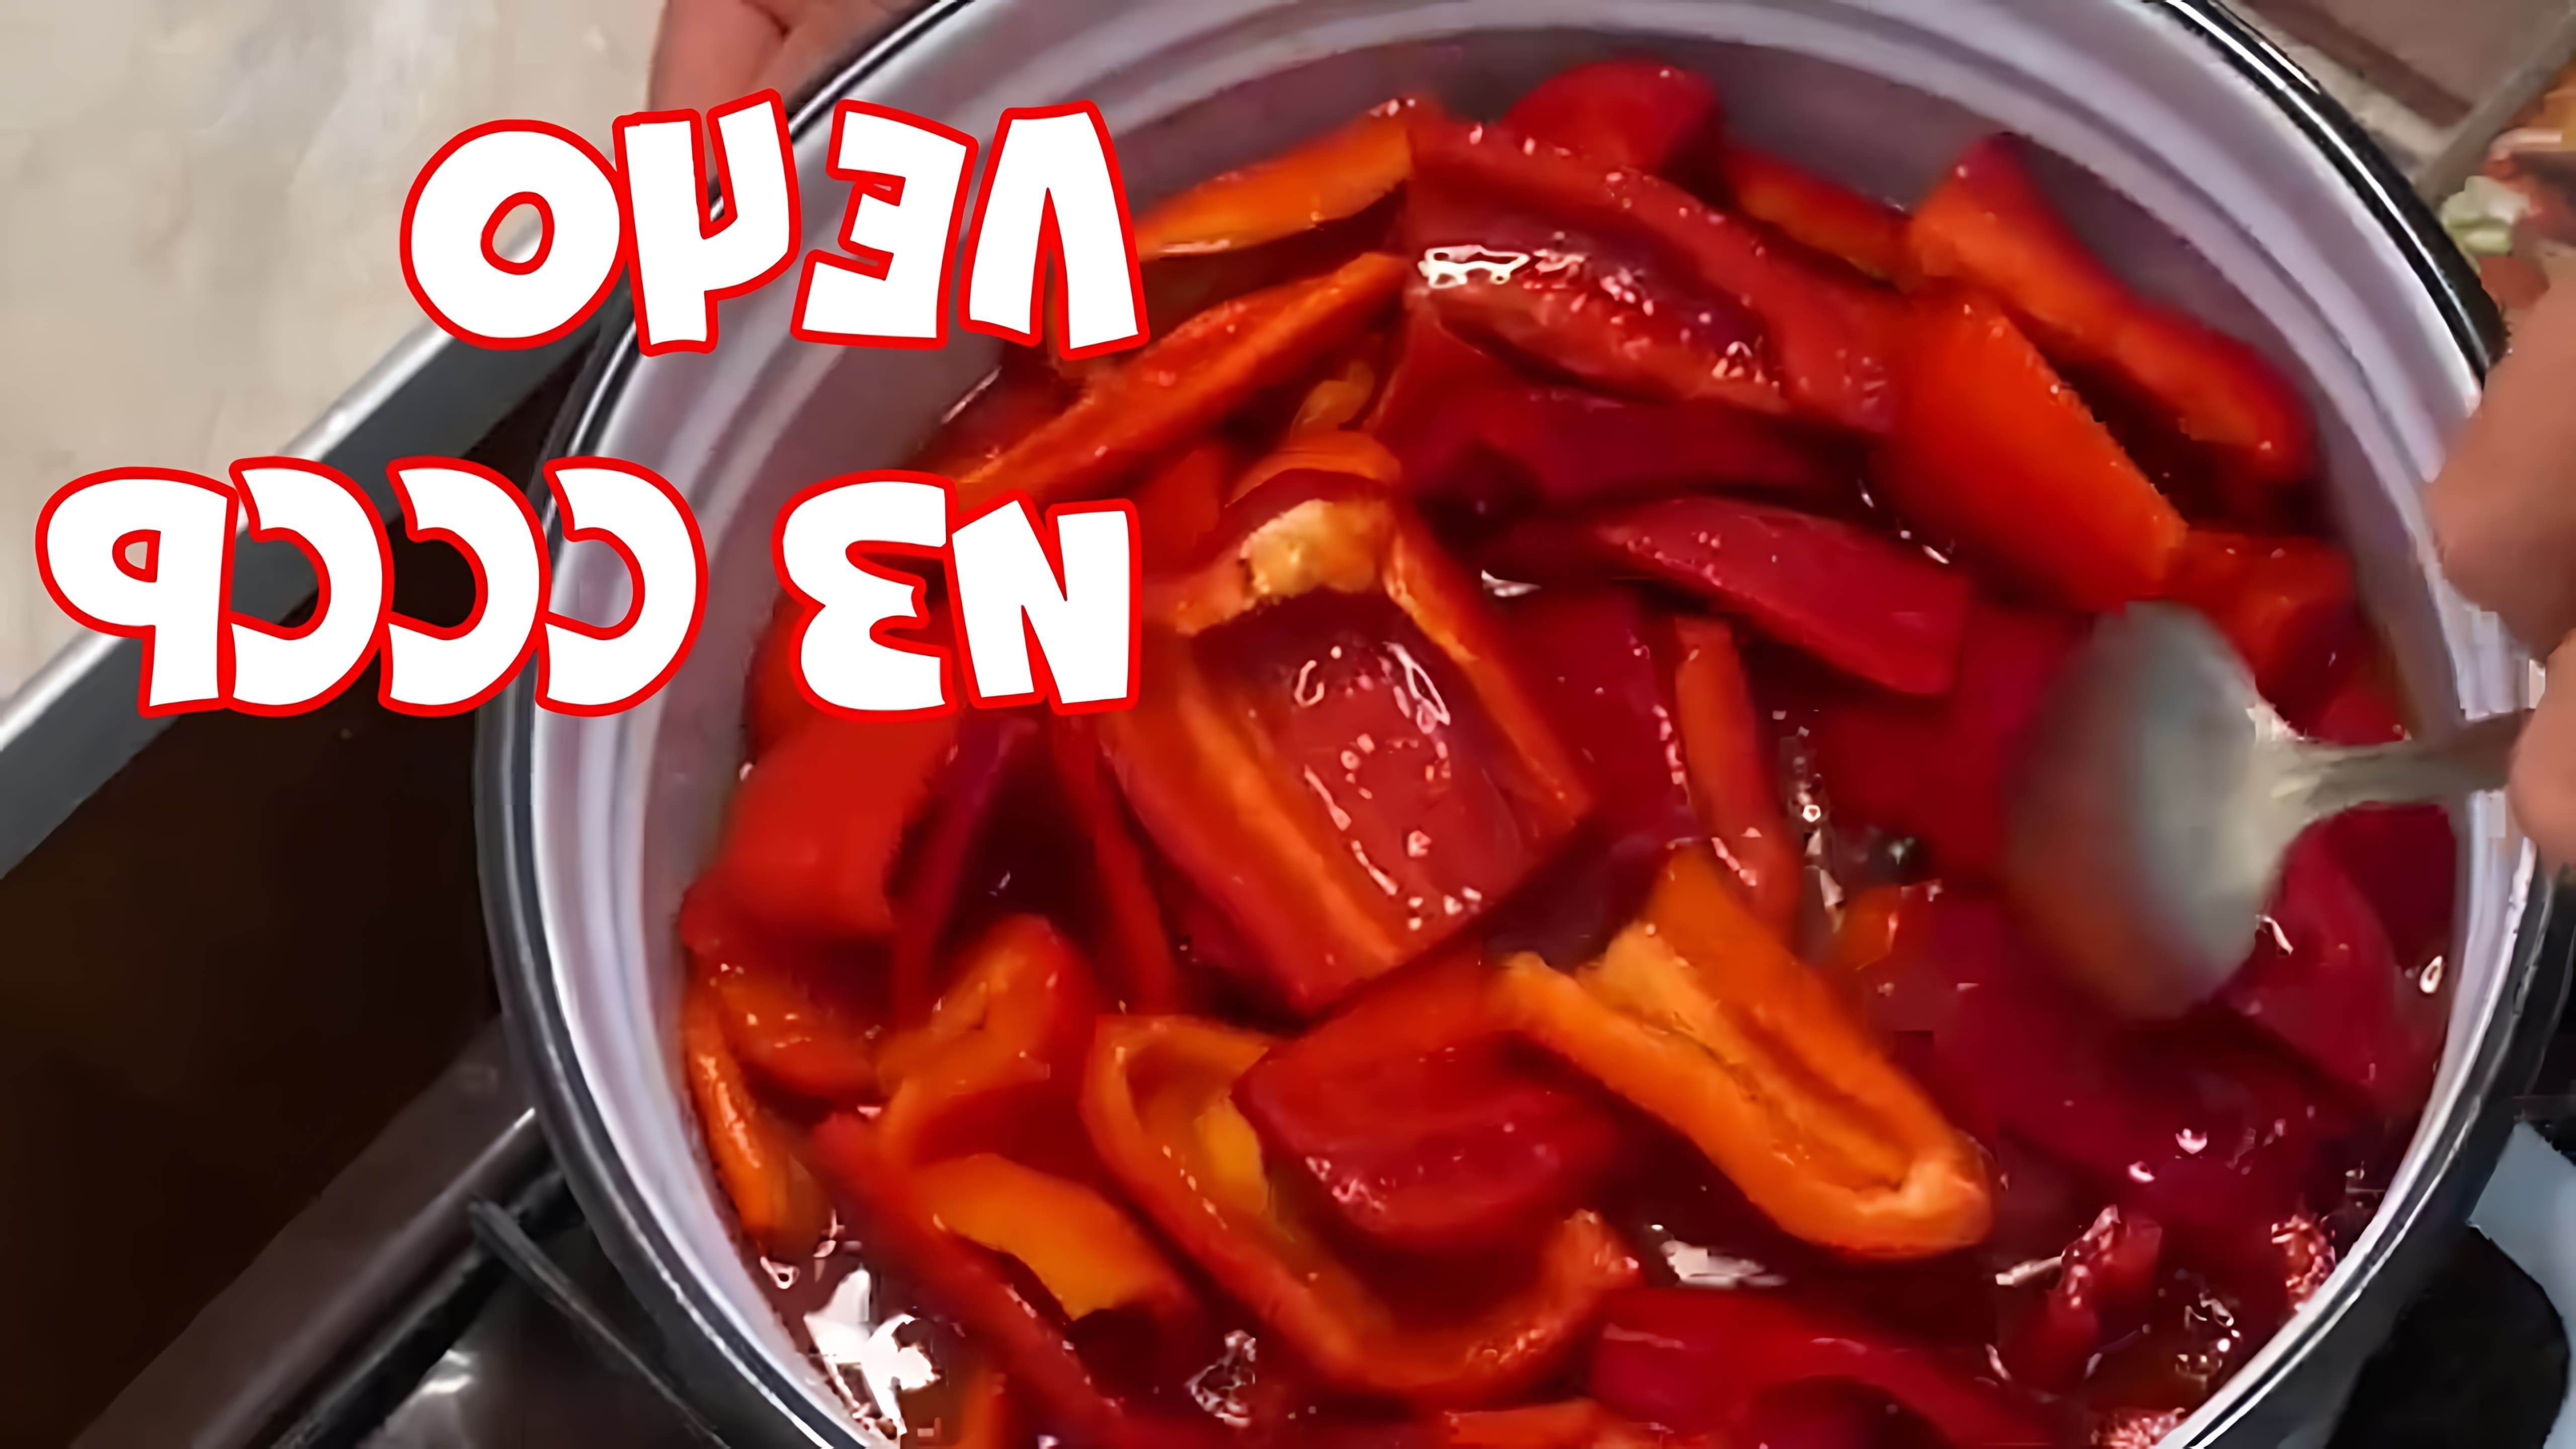 В этом видео демонстрируется рецепт приготовления лечо, популярного блюда из перца и томатного сока